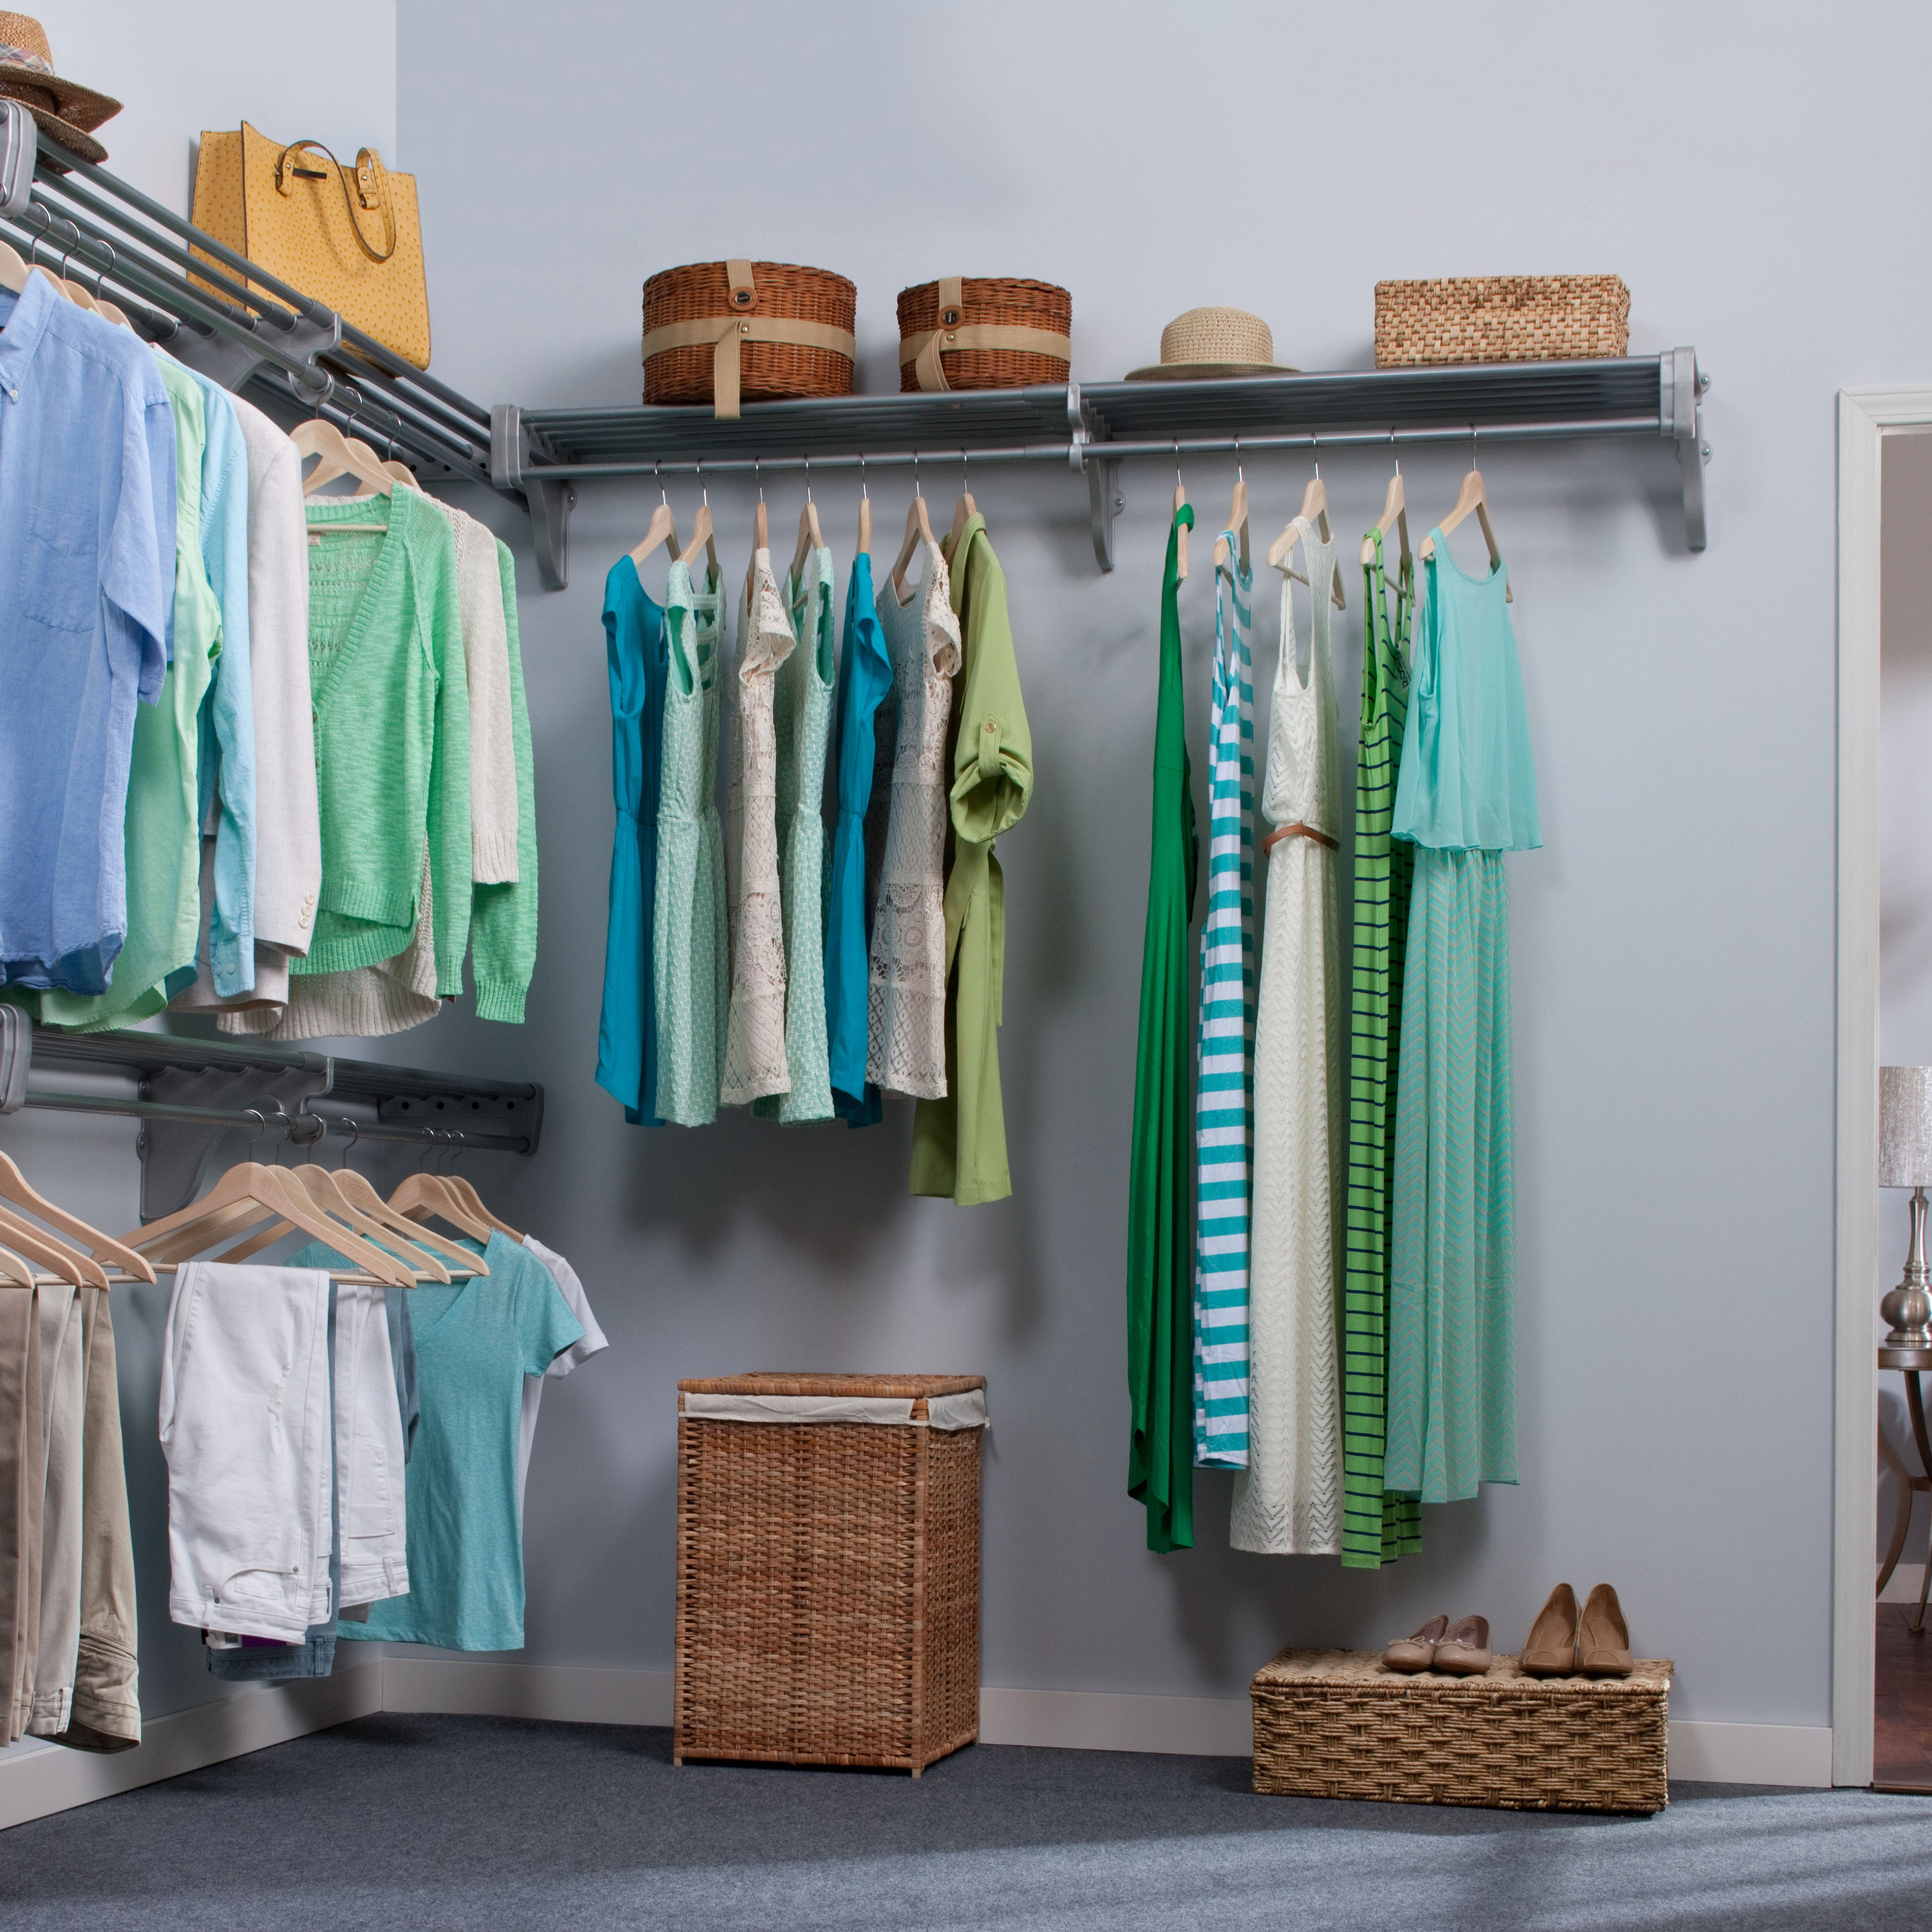 Expandable Linen Closet Organizer Kit, White - 4 Shelves